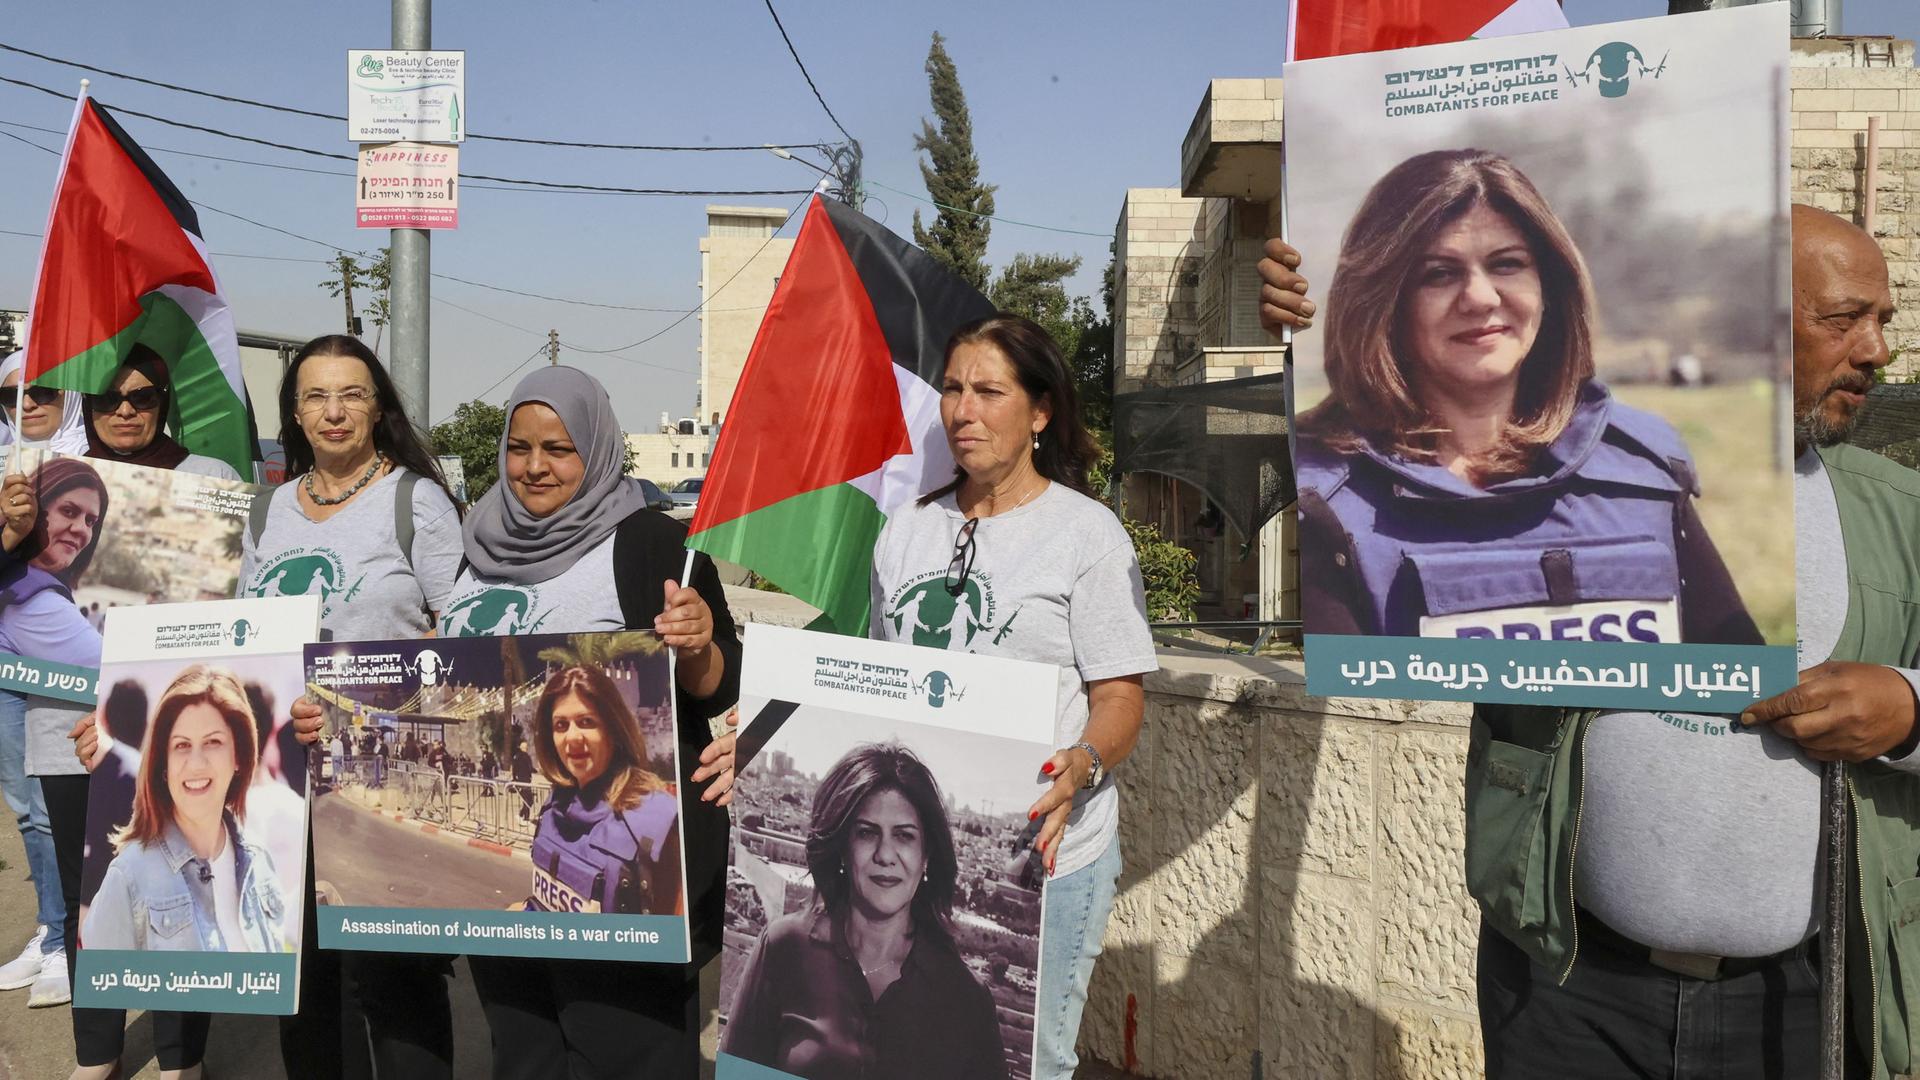 Palästinesische Demonstrierende und isralische Aktivisten der Bewegung "Combatants for Peace" tragen Plakate mit einem Porträt der getöteten Journalistin Shireen Abu Akleh.  